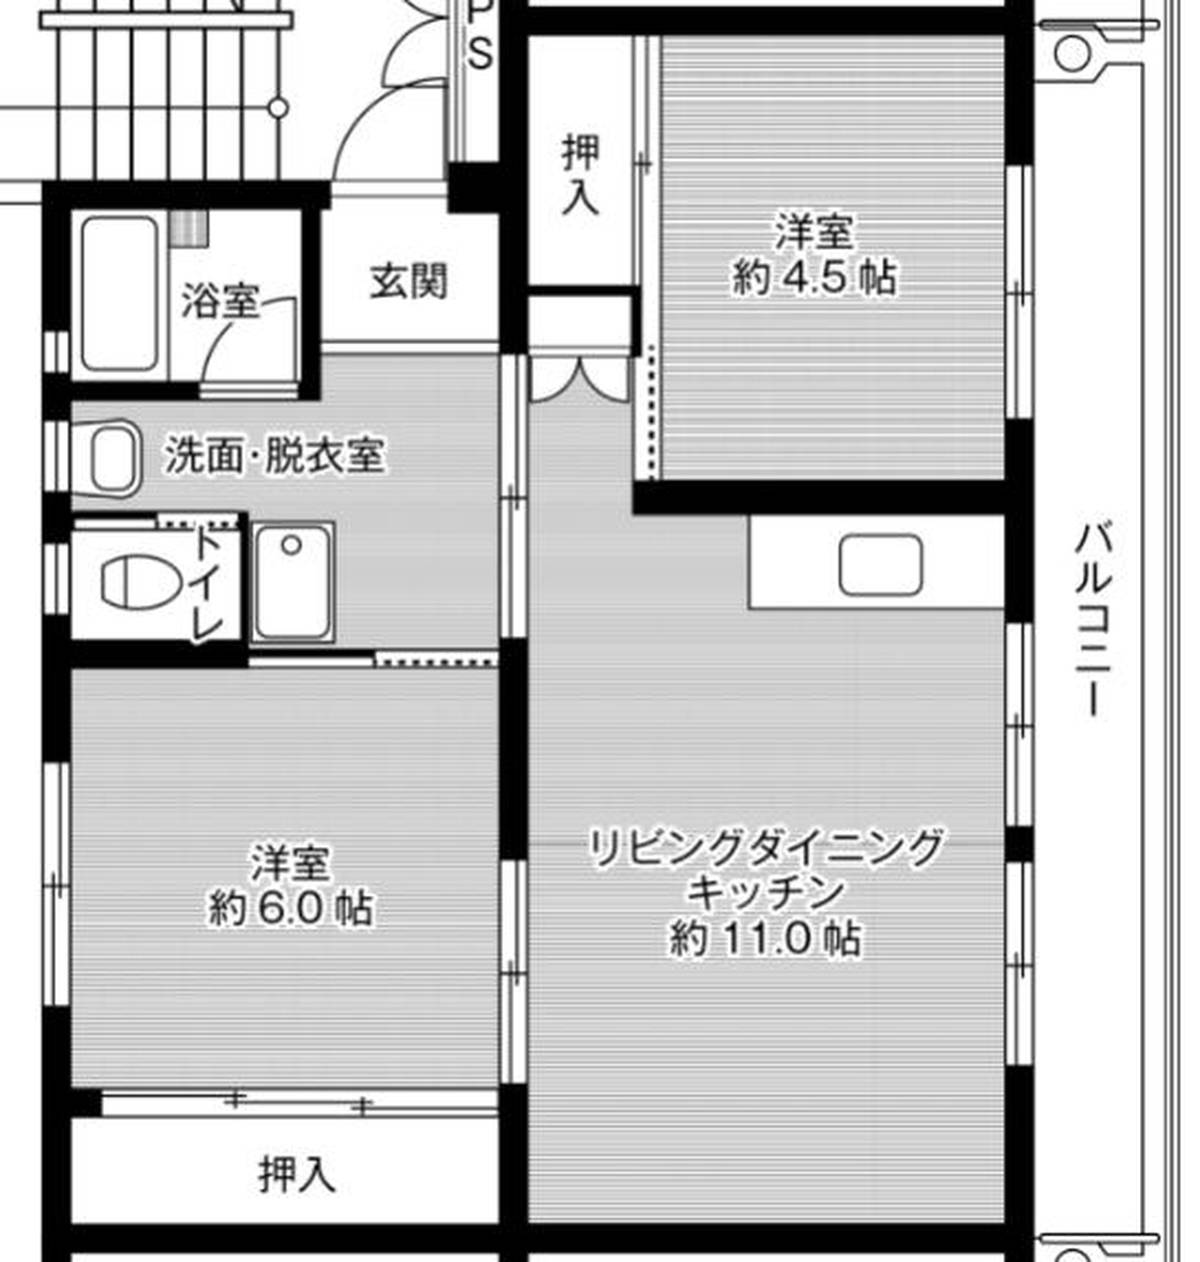 2LDK floorplan of Village House Oze in Seki-shi